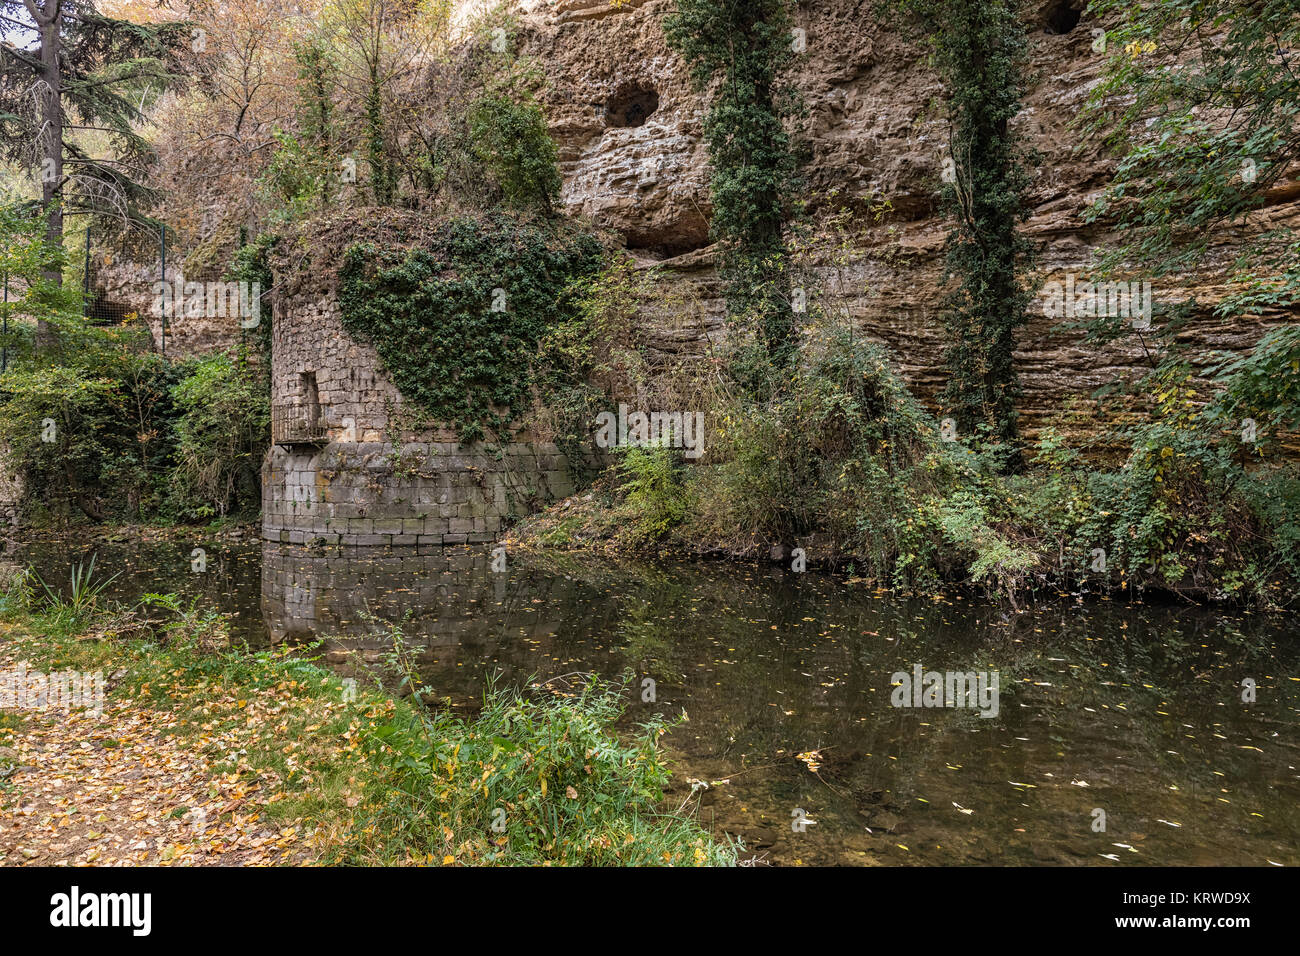 Landscape in the Eresma River, near Segovia. Spain. Stock Photo